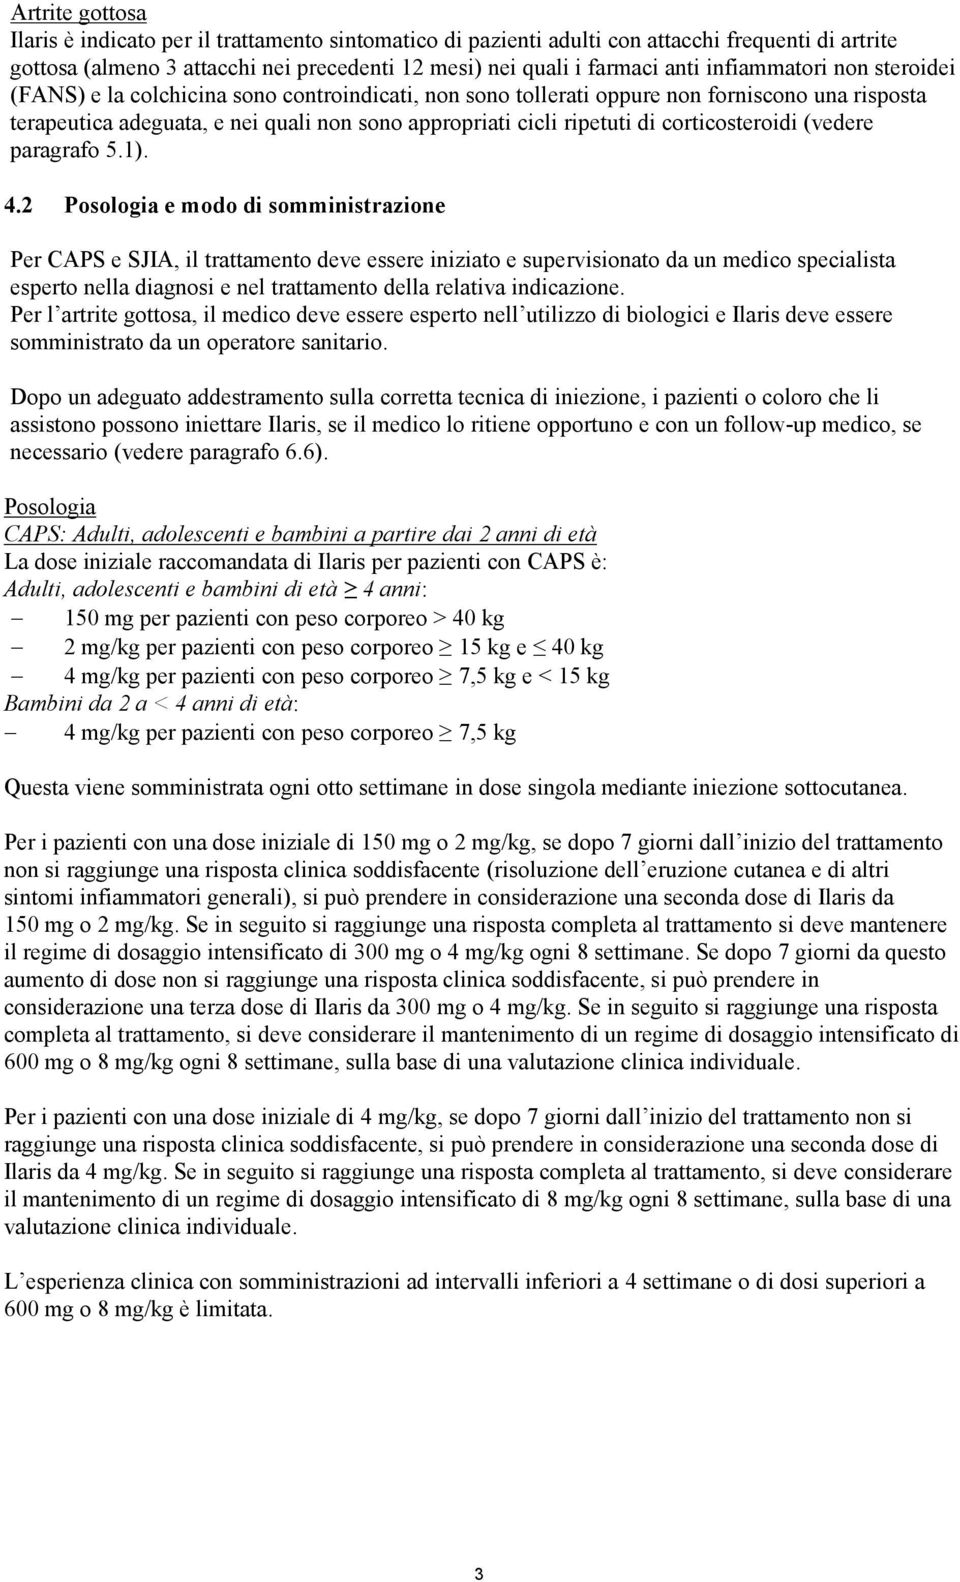 corticosteroidi (vedere paragrafo 5.1). 4.